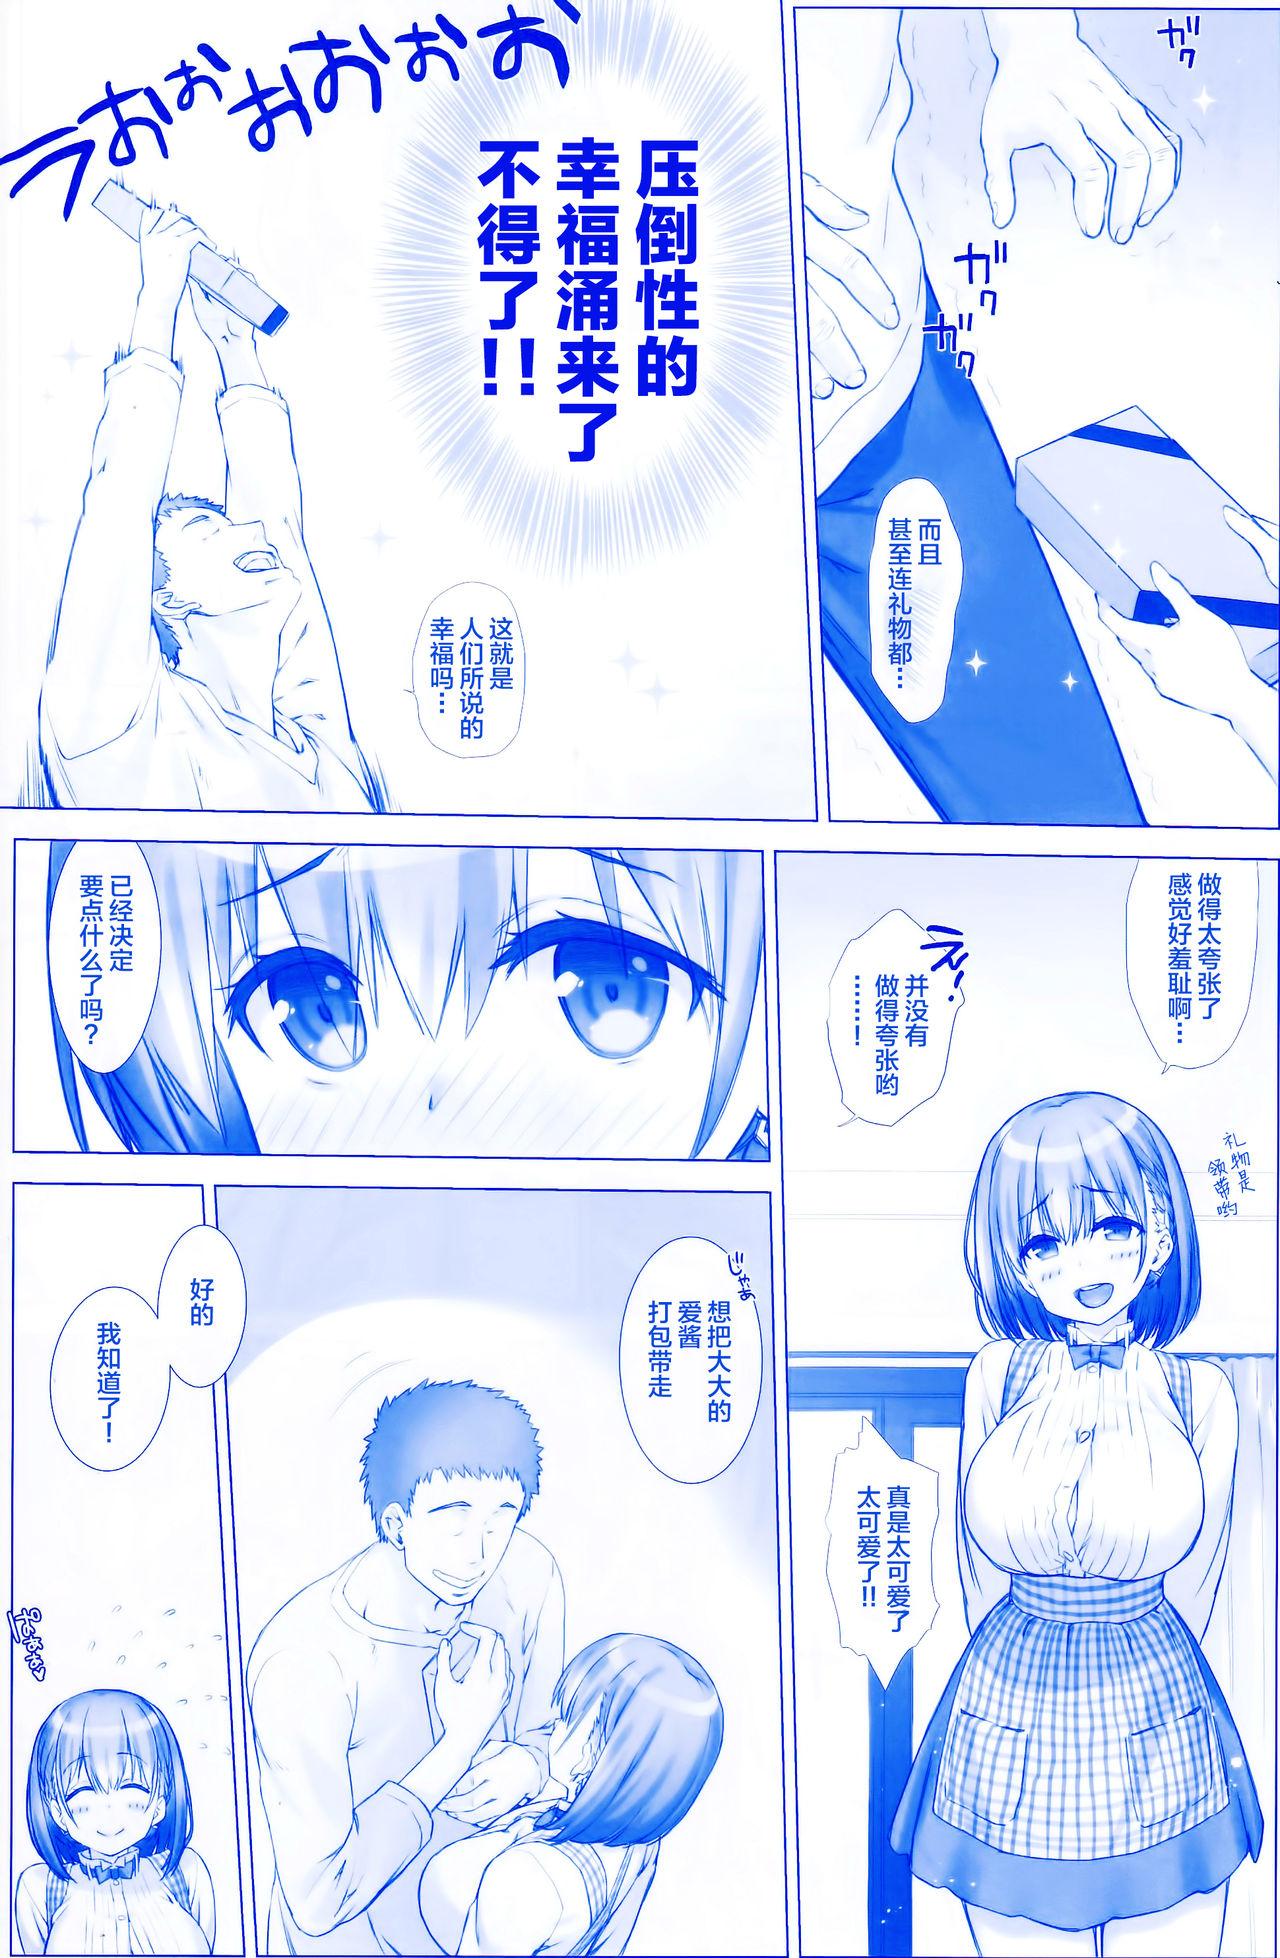 Sex Toys Shuumatsu no Tawawa 3 - Tawawa on Weekend 3 - Getsuyoubi no tawawa Gaping - Page 6